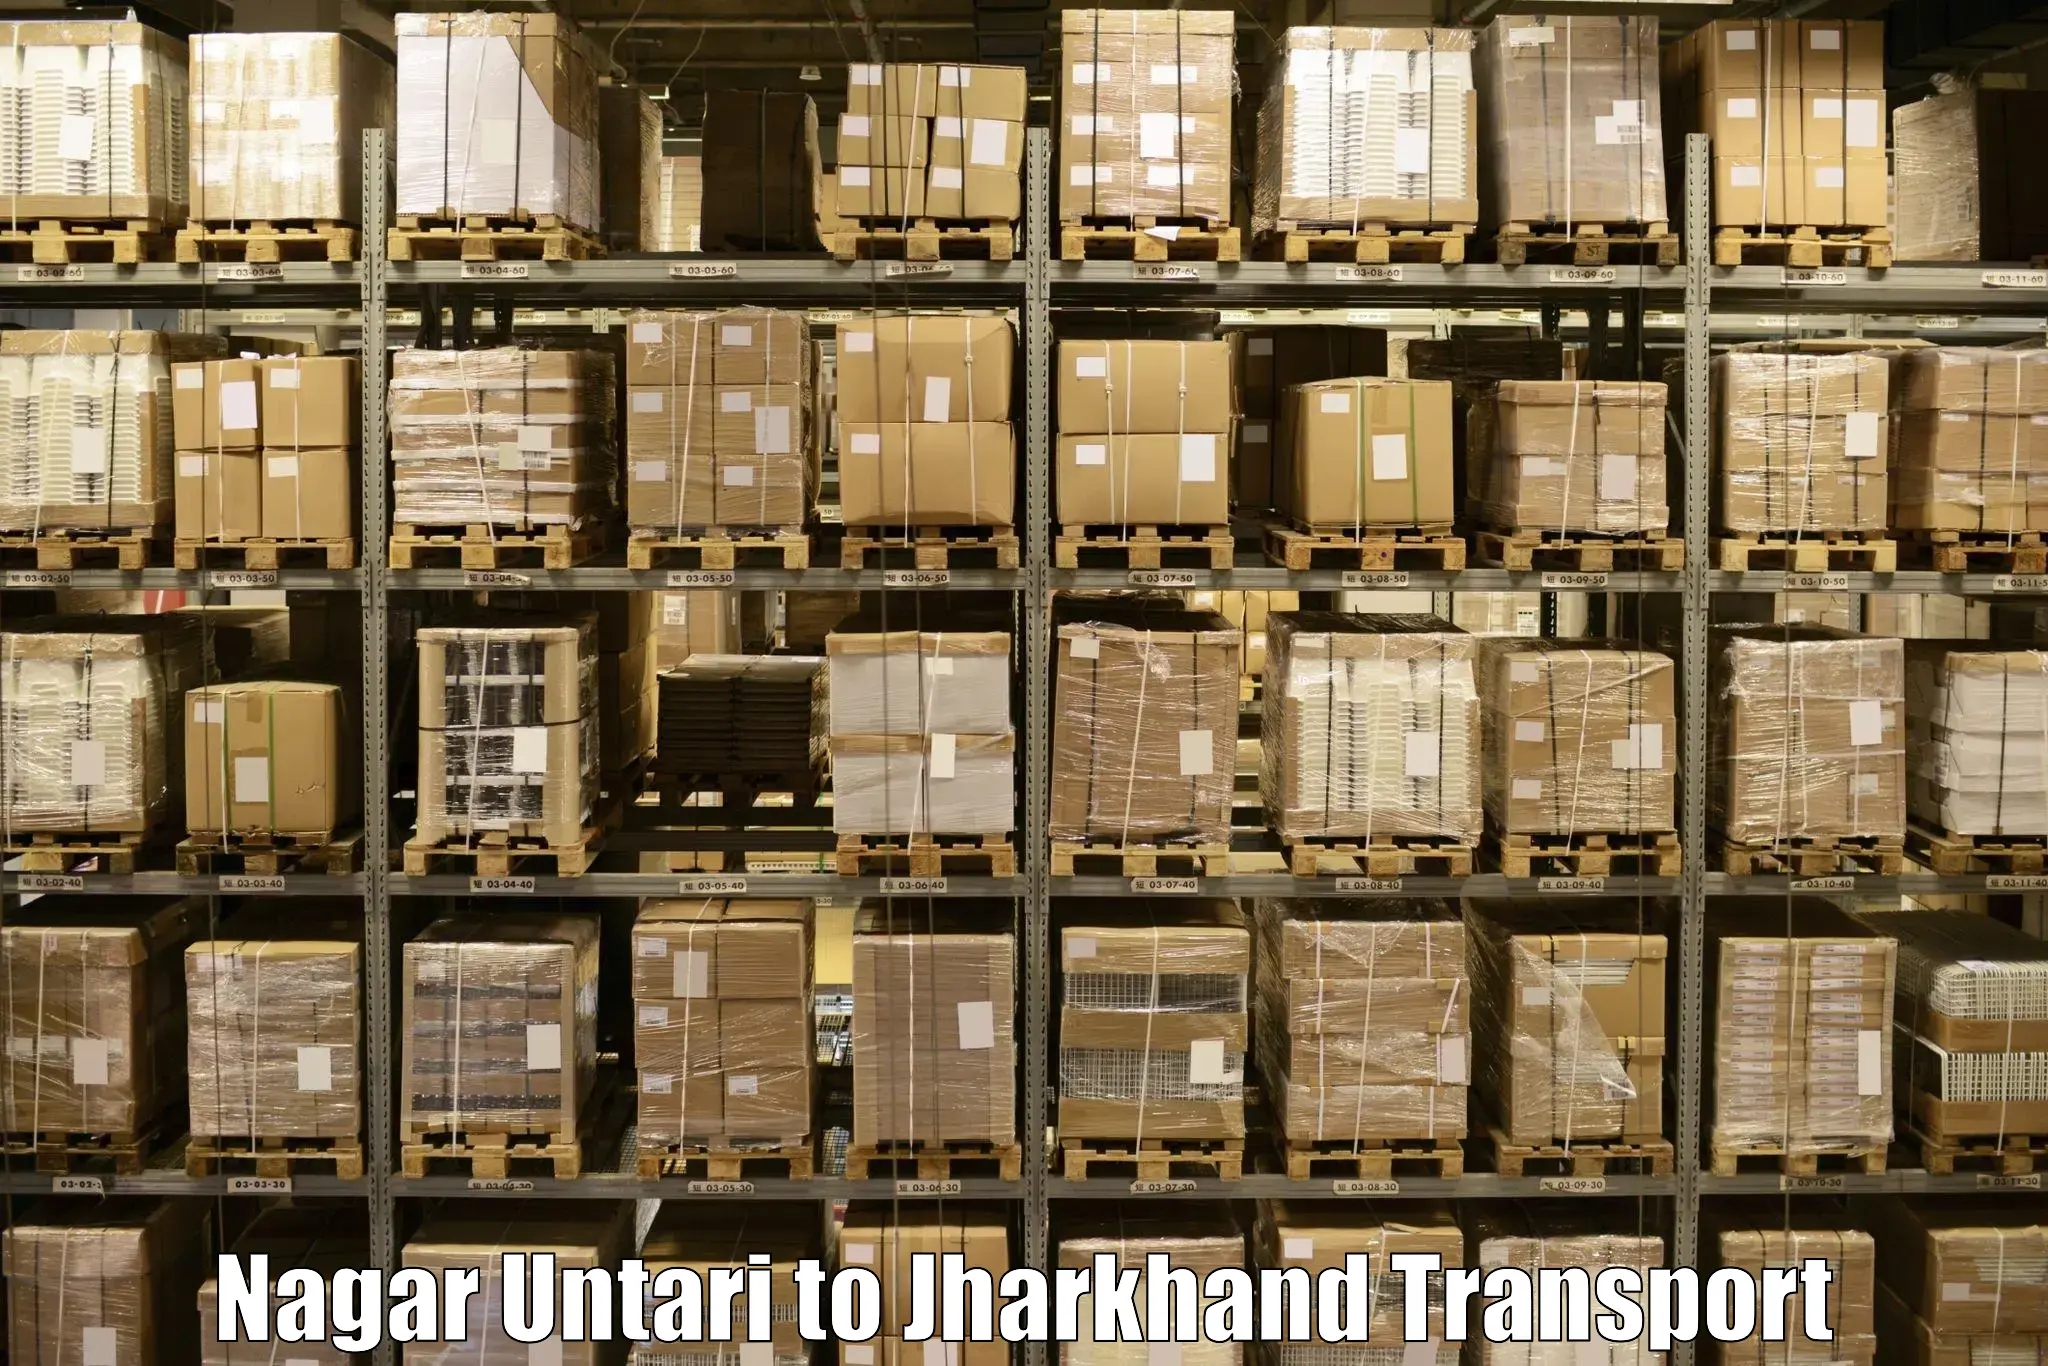 Online transport booking Nagar Untari to Medininagar